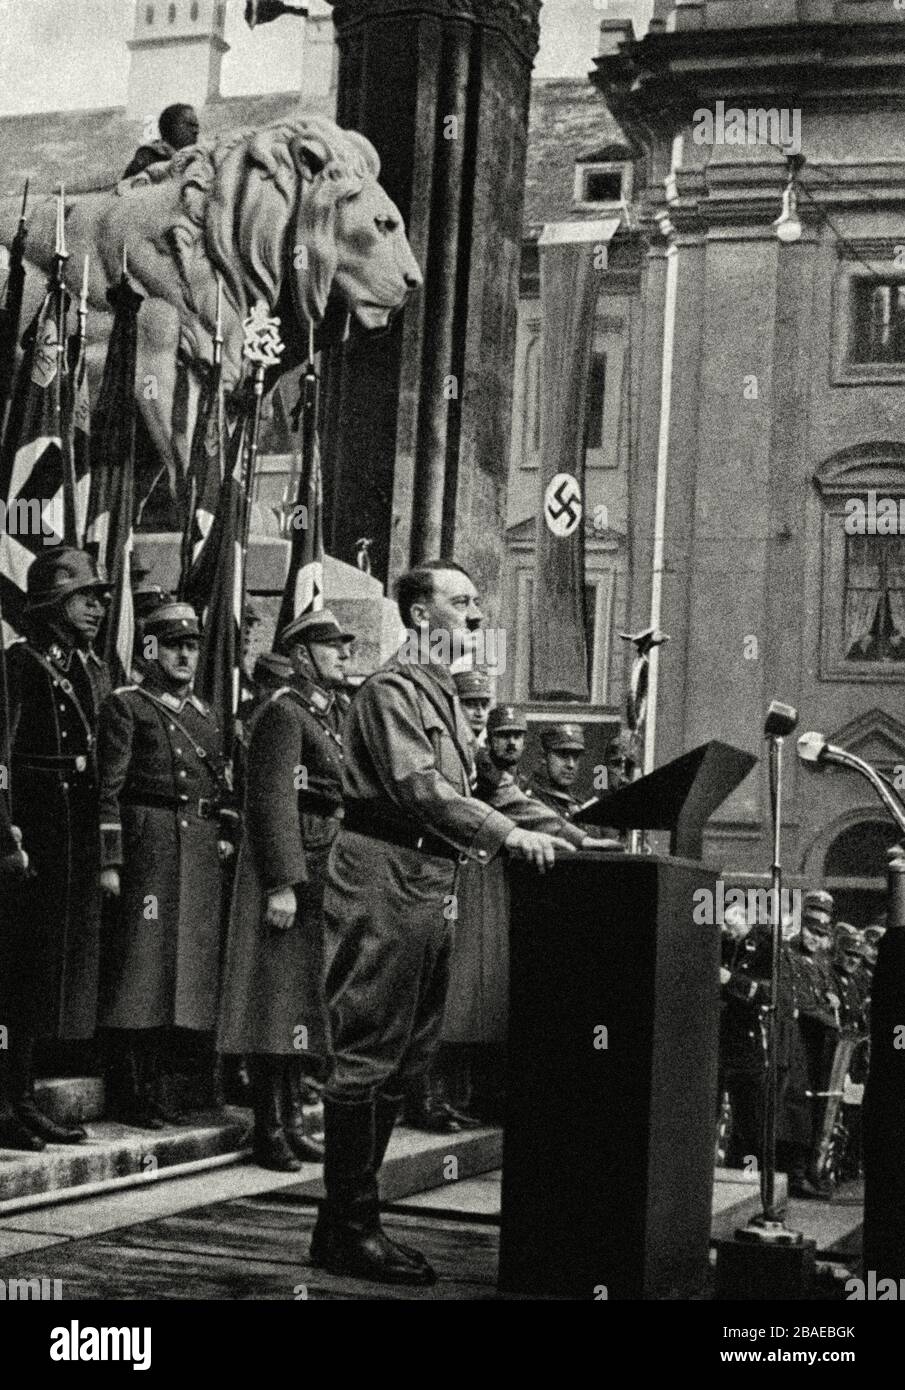 Adolf Hitler parle aux membres du Hitlerjugend (la jeunesse d'Hitler) à Munich. Allemagne. 9 novembre 1934 Banque D'Images